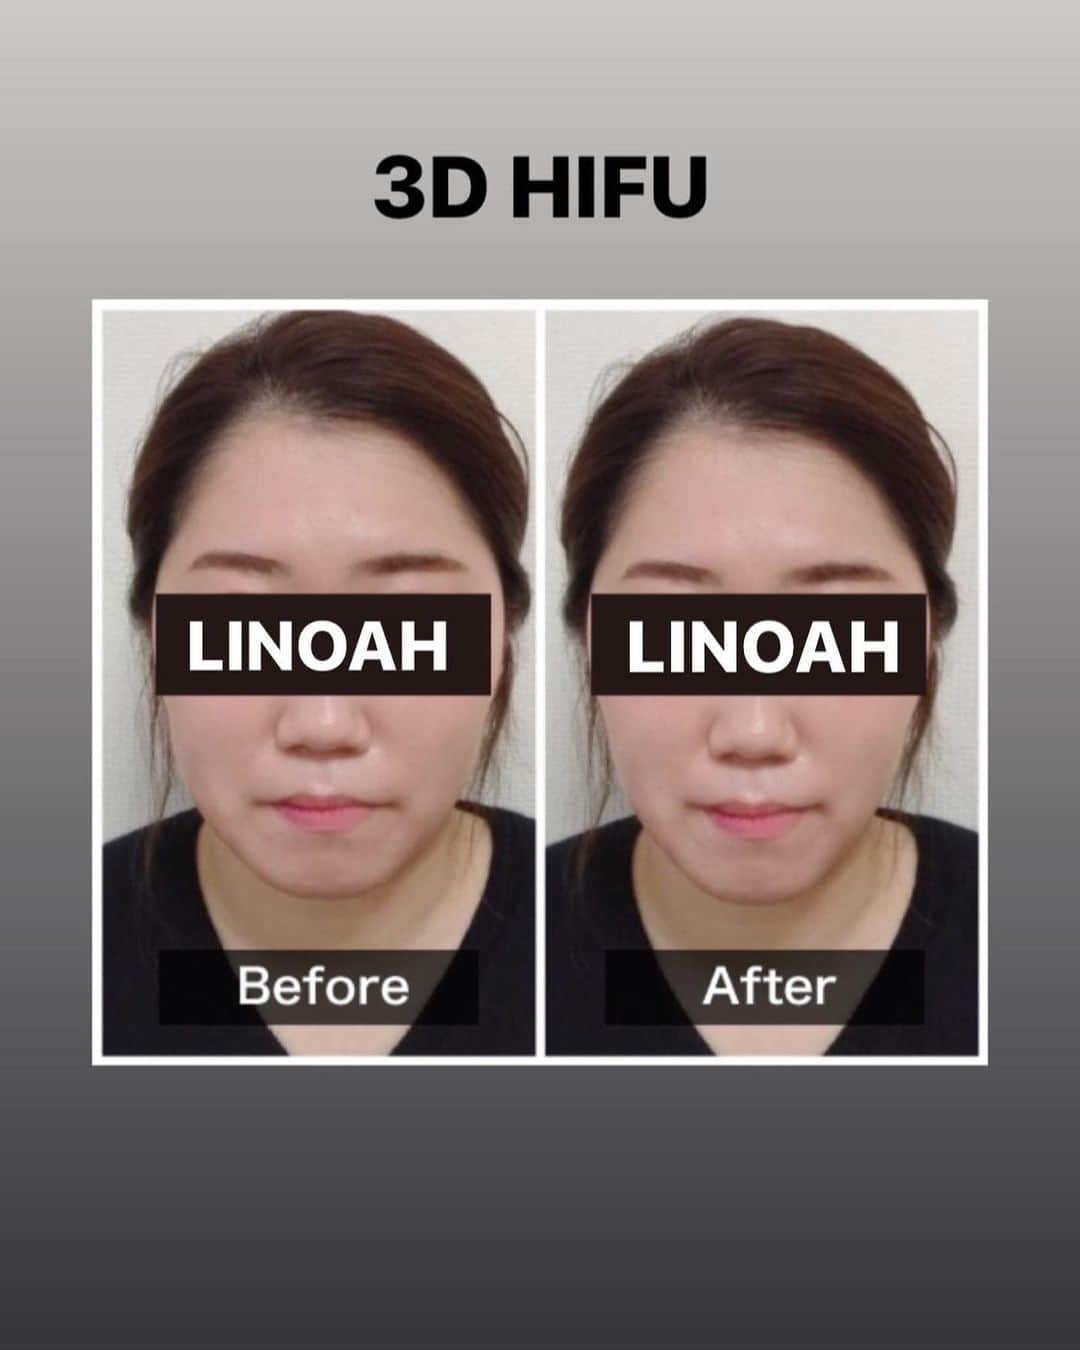 Beauty Salon LINOAHさんのインスタグラム写真 - (Beauty Salon LINOAHInstagram)「・﻿ 本日は【新メニュー】3D HIFUについてのご案内です。﻿ ﻿ 切らないリフトアップとも言われているHIFUは皆さんご存知でしょうか？﻿ ﻿ HIFU（ハイフ）とは高密度焦点照射式超音波治療（High Intensity Focused Ultrasound）の頭文字をとった略語です。﻿ ﻿ 高密度とはハイパワーのこと。﻿ ﻿ 焦点照射式とは、周囲にダメージを与えないということです。﻿ ﻿ つまり強力で周囲にダメージを与えない超音波で、切らないで腫れないお顔のフェイスアップをする施術ということです。﻿ ﻿ 皮膚の下だけに特殊超音波が作用し、切らない腫れないフェイスリフトを実現させます。﻿ ﻿ HIFU（ハイフ）には旧世代と新世代があります。﻿ 旧世代のHIFU（ハイフ）は線照射（２Ｄ）で照射に当てむらが起こります。﻿ ﻿ そのため効果が弱く、多少のリフトアップ効果しかありませんでした。﻿ ﻿ ※正確には線照射は１Ｄです。ですが深さを変えて照射することにより２Ｄ効果がでます。﻿ ﻿ ここでは分かりやすく２Ｄと表現致します。﻿ ﻿ 新世代HIFU（ハイフ）は面照射（３Ｄ）で、均一に照射でき、効果が強く、強力なリフトアップ効果と小顔効果を発揮します。﻿ ﻿ パワフルになった分、小顔効果が発揮できるわけです。﻿ ﻿ 3D HIFU（ハイフ）の相場は他店で受けると﻿ 1回30000円～40000円と高額です。﻿ ﻿ 当店ではこちらの﻿ ３D HIFU（ハイフ）がモニターキャンペーンで 1回5000円でお受け頂けます！！﻿ ﻿ ご興味がある方は是非、ご予約お問い合わせいただければと思います。﻿ ﻿ ﻿ 脱毛・フェイシャルBeautySalon　LINOAH　　　　　　　　﻿ 大阪梅田の脱毛・フェイシャル完全予約制のプライベートサロン　　﻿ 男女　性別問わずご利用頂けます。﻿  ﻿  ﻿ 【アクセス】﻿  ﻿ 大阪市北区鶴野町4-11　朝日プラザ914﻿ 阪急 梅田駅茶屋町口 徒歩 5分﻿  ﻿ 【営業時間】﻿ 平日　11:00～22:00（最終受付21：30）﻿ 土日祝　11:00～20:00（最終受付19：30）﻿ ※完全予約制となっております。﻿  ﻿ 【定休日】﻿ 毎週木曜日﻿  ﻿ ご予約はこちらへ﻿ 電話：06-6110-5067 ﻿ ﻿ ﻿ #大阪 #梅田 #脱毛 #メンズ脱毛 ﻿ #レディース脱毛 #フェイシャル #エステ #beautysalonlinoah ﻿ #ビューティーサロンリノア ﻿ #プライベートサロン ﻿ #フォトフェイシャル ﻿ #男性 #女性 #lgbt ﻿ #安心 #美肌 #美白 #しみ #シワ ﻿ #ニキビ #ニキビ跡 ﻿ #リフトアップ #小顔 #ハイフ#HIFU﻿ #ヒゲ #顔 #青ひげ #カミソリ負け #美意識 ﻿ ﻿」8月5日 0時06分 - beautysalon_linoah